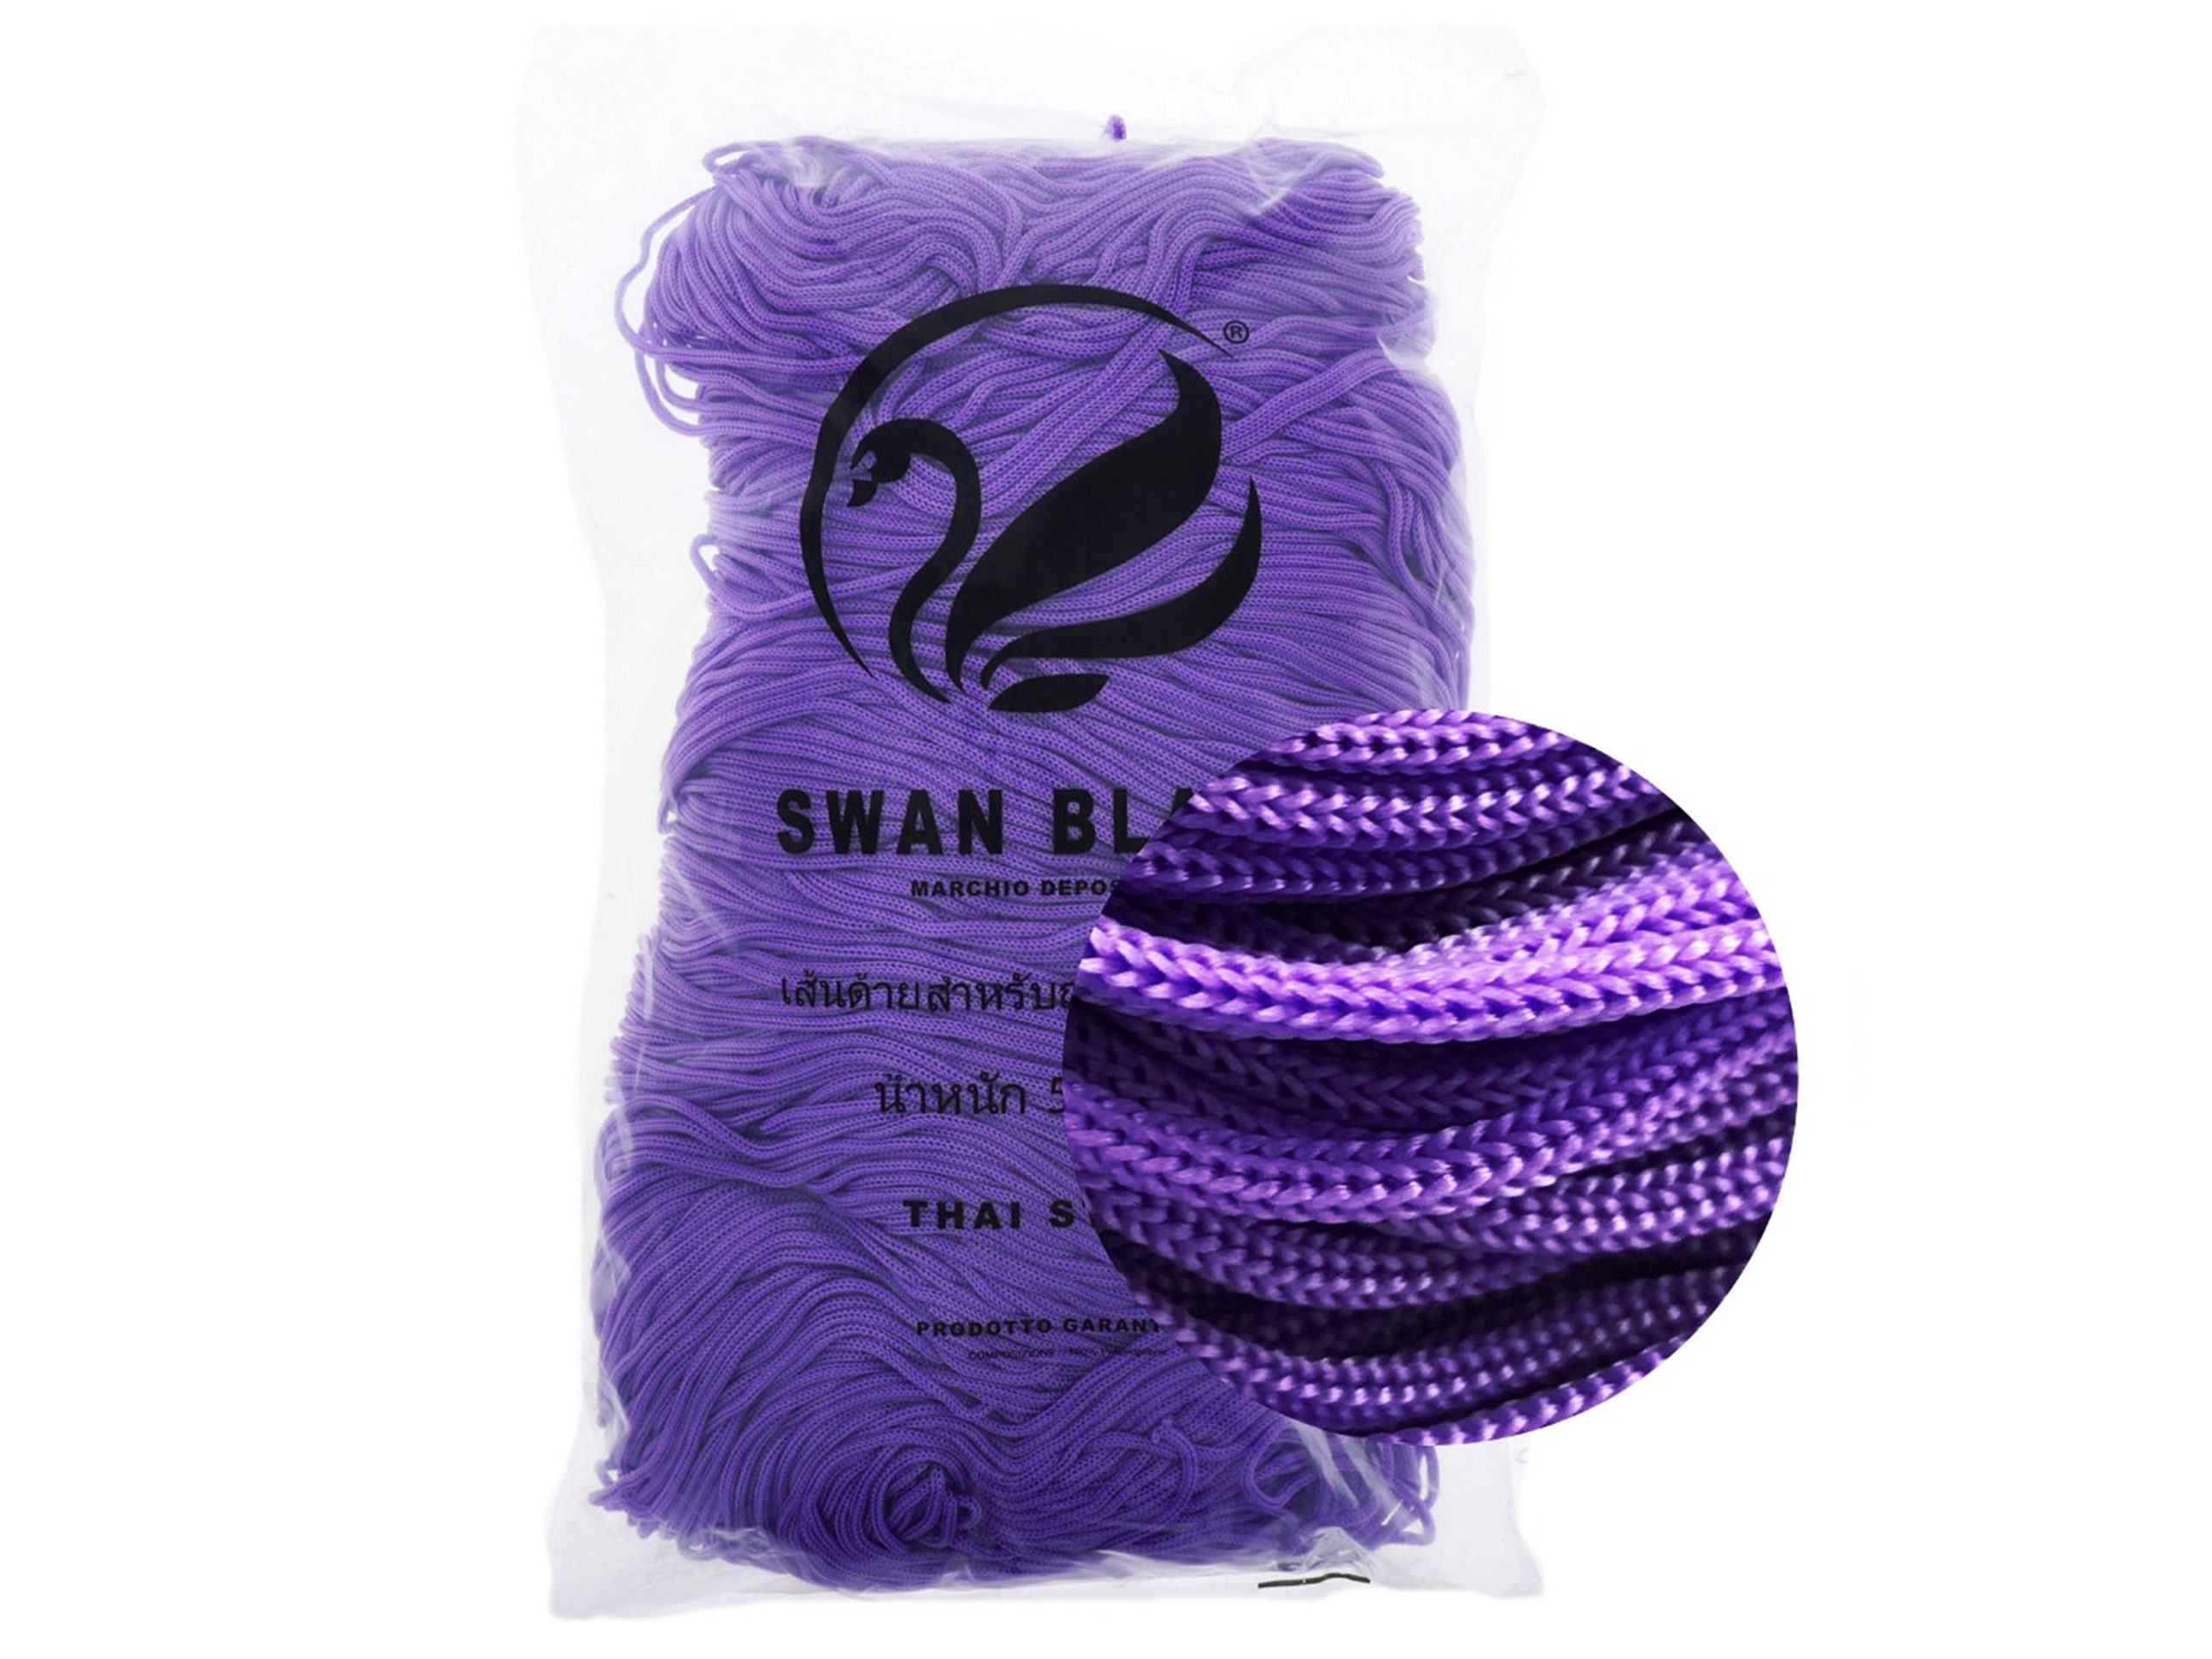 Cordino Thai Swan Black - Tre Sfere - L'originale! - Calore di Lana